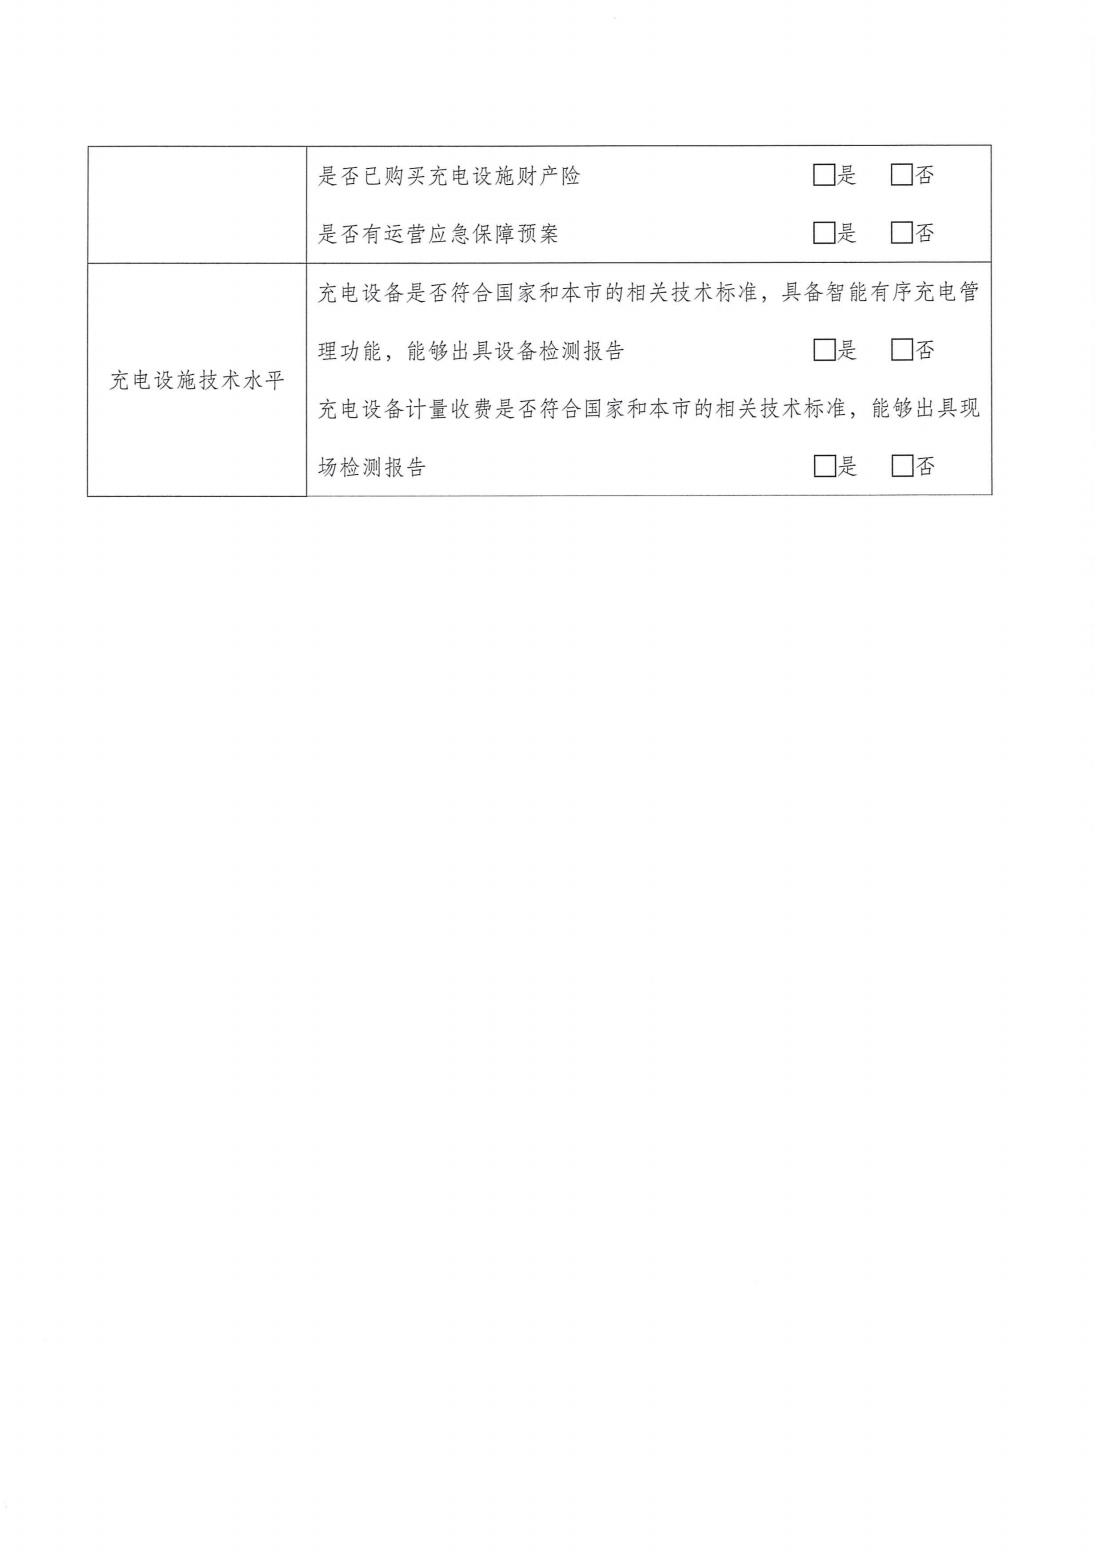 9红头文件-2023年度上海市充电设施“统建统营”示范小区的建设要求-新_08